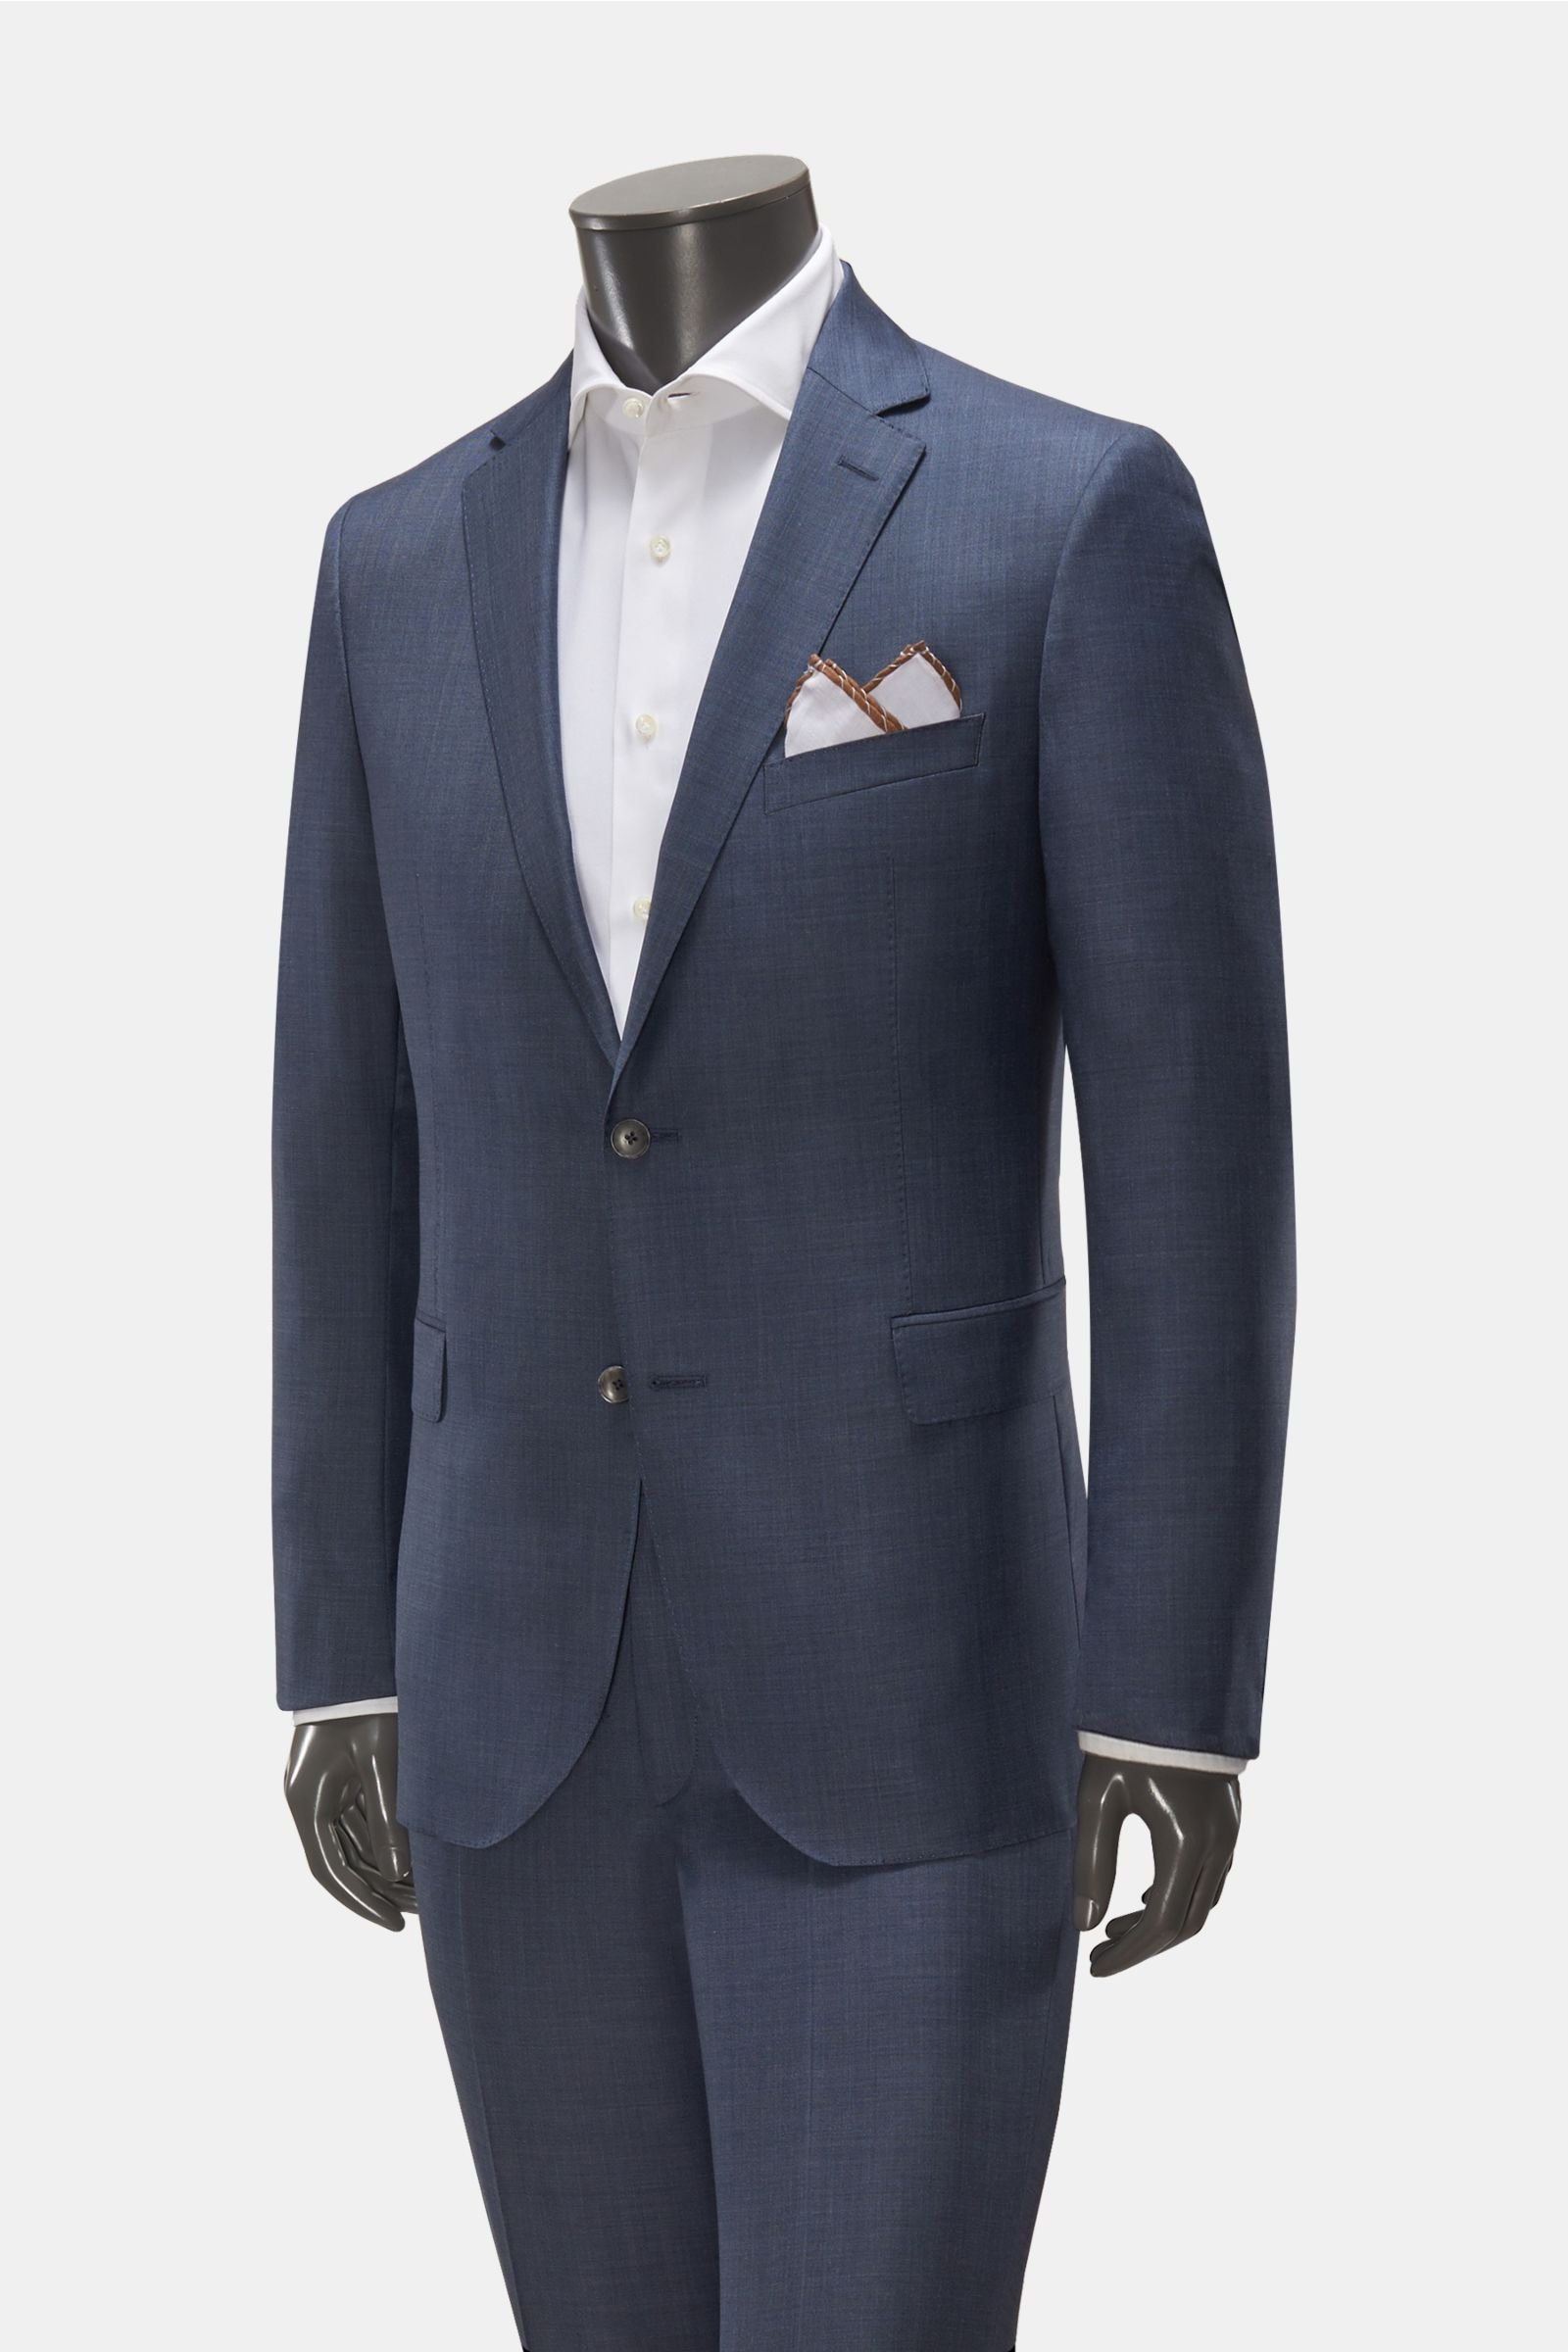 Suit 'Sean Jim' grey-blue